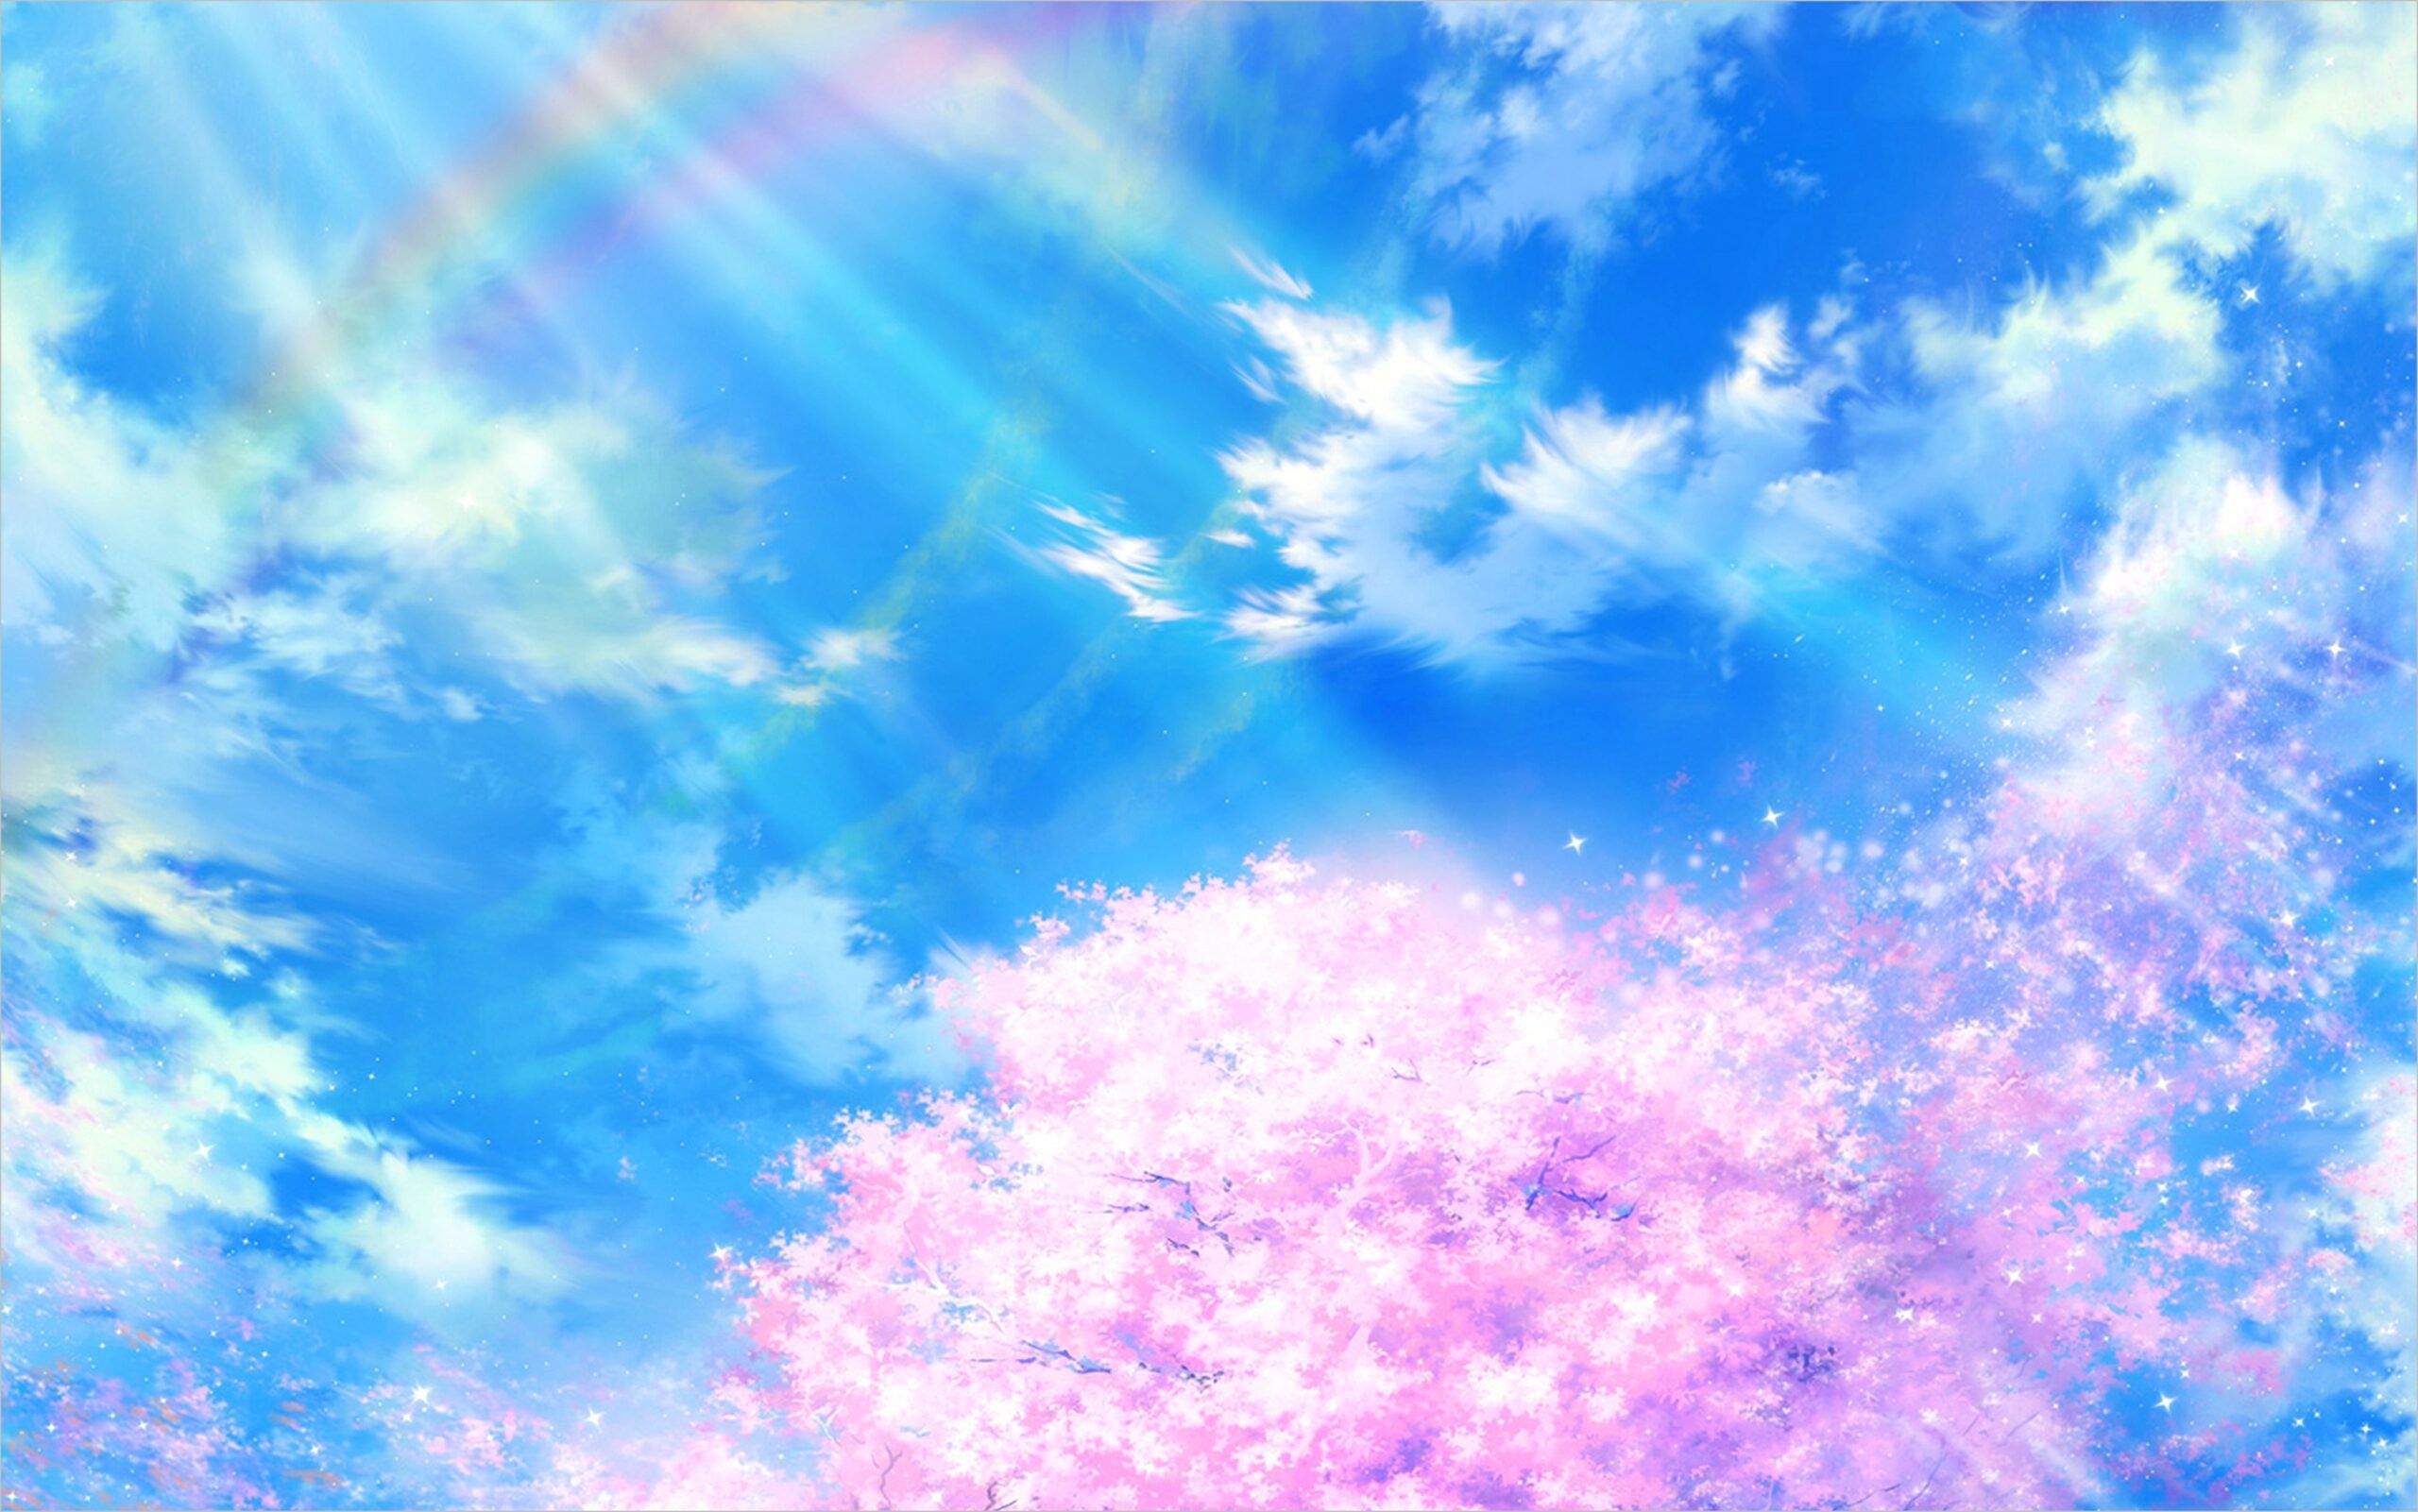 Anime Sky Wallpaper 4k. Blue sky wallpaper, iPhone background image, Anime wallpaper iphone